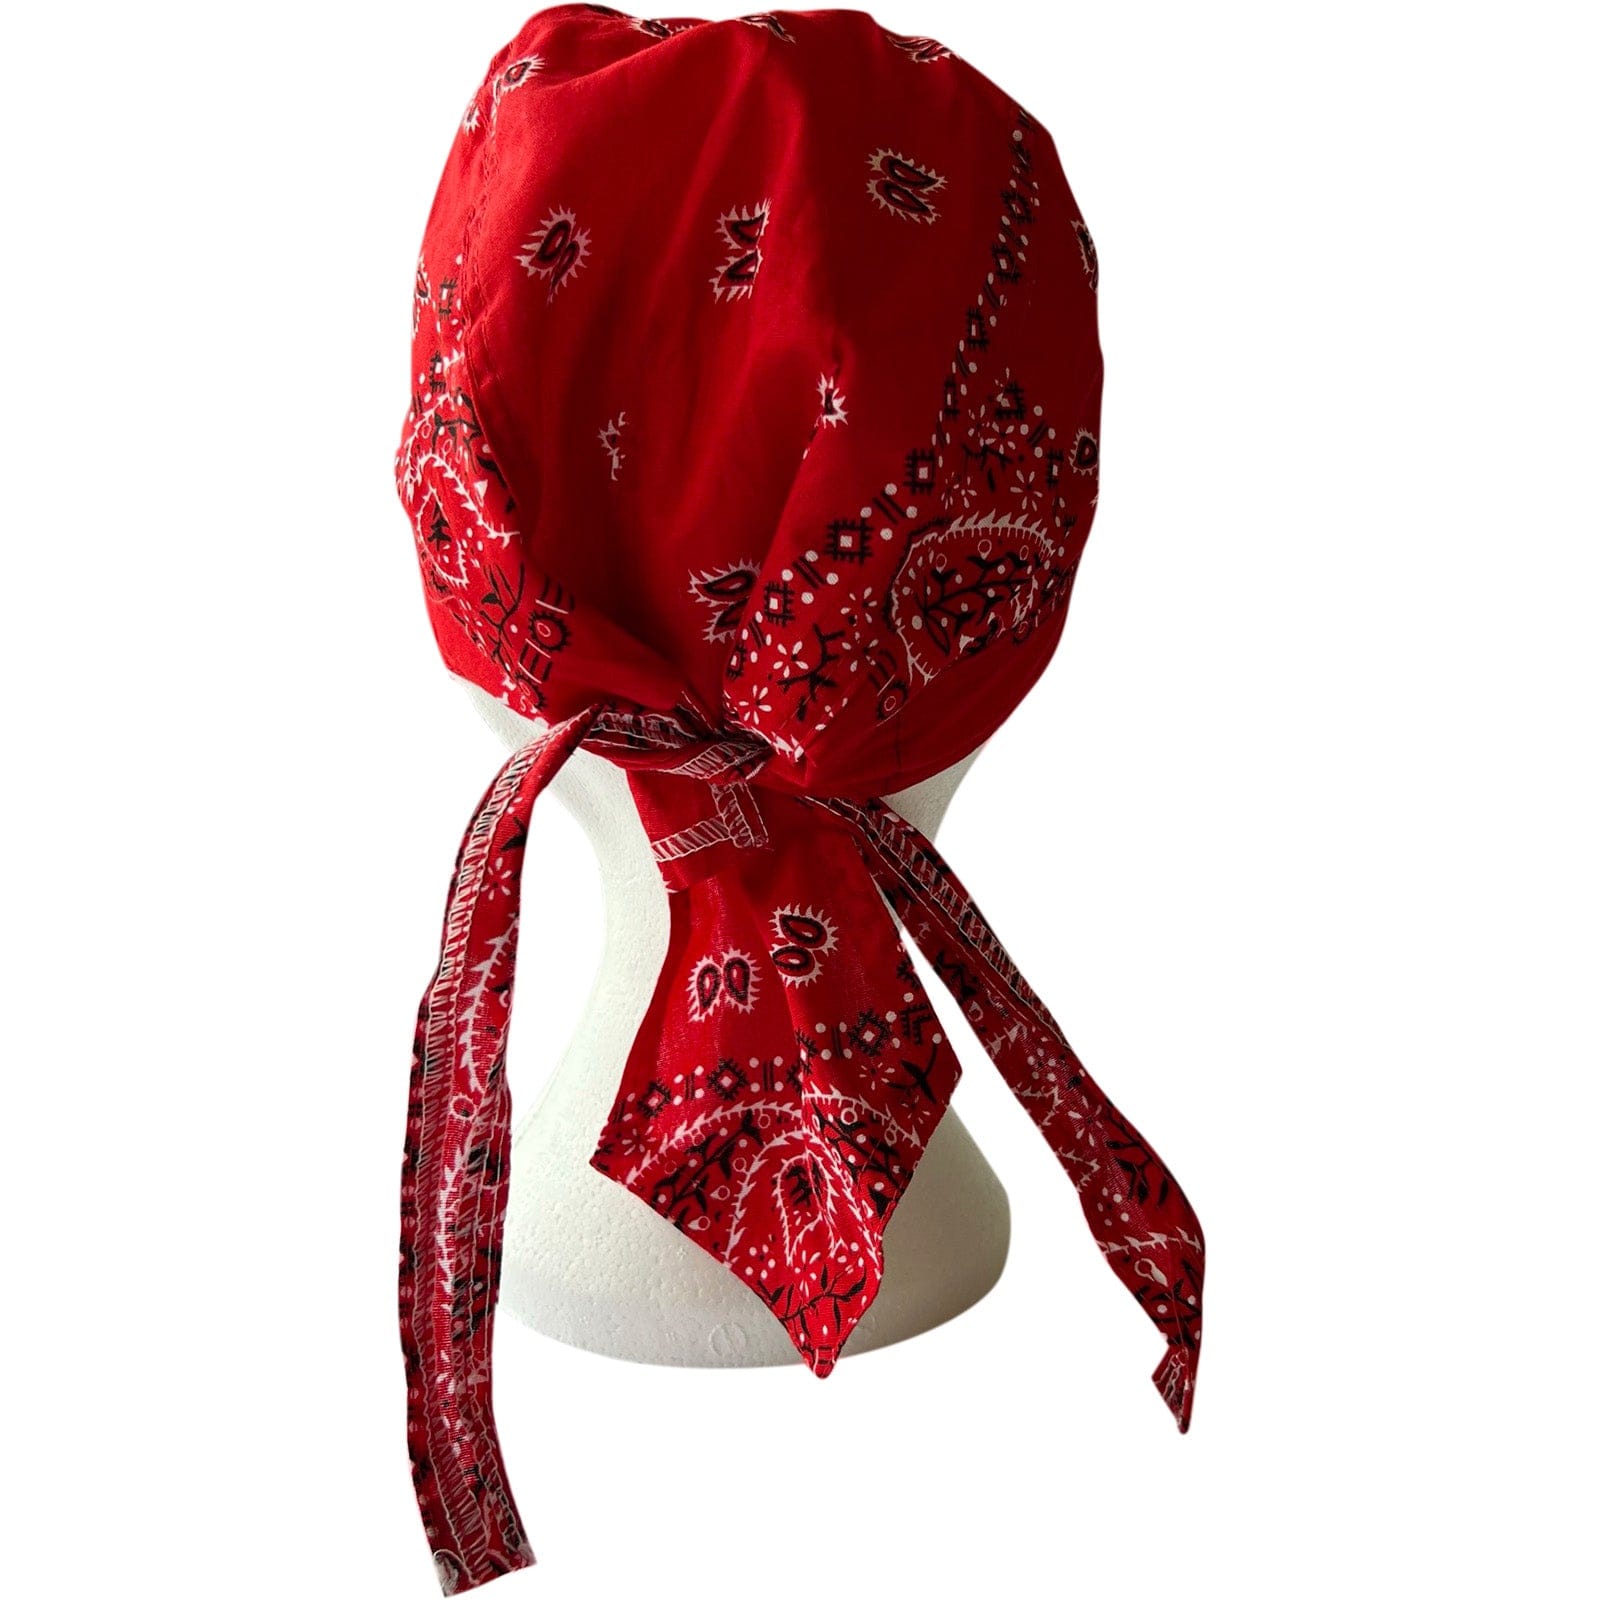 Red Bandana Zandana Hairband Headband Headscarf Durag Hair Head Band Sun Hat Cap